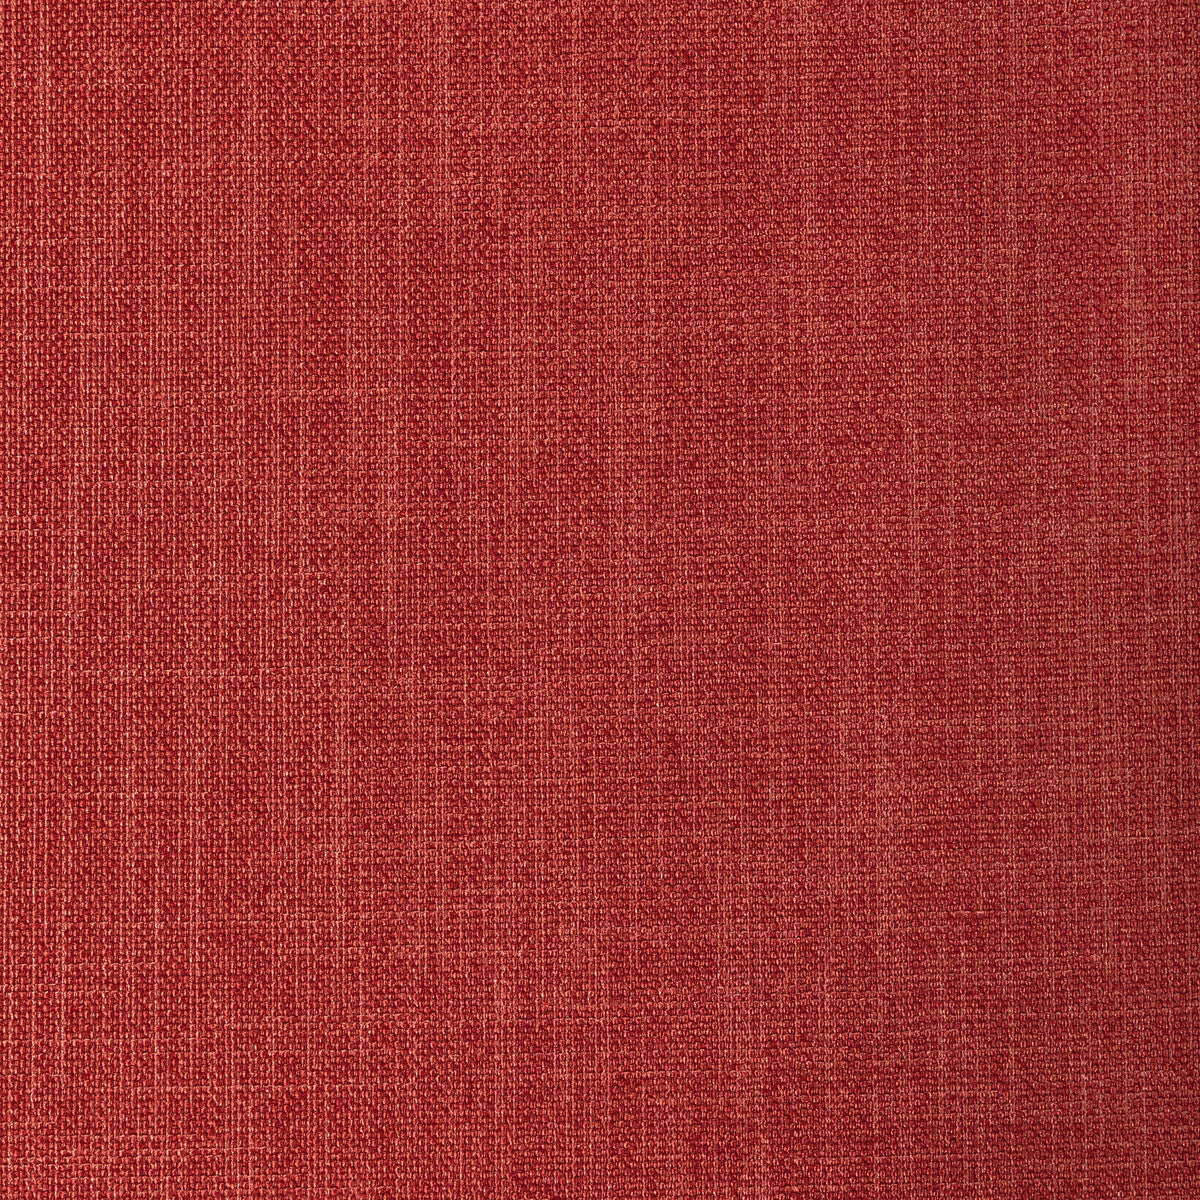 Kravet Basics fabric in 33120-712 color - pattern 33120.712.0 - by Kravet Basics